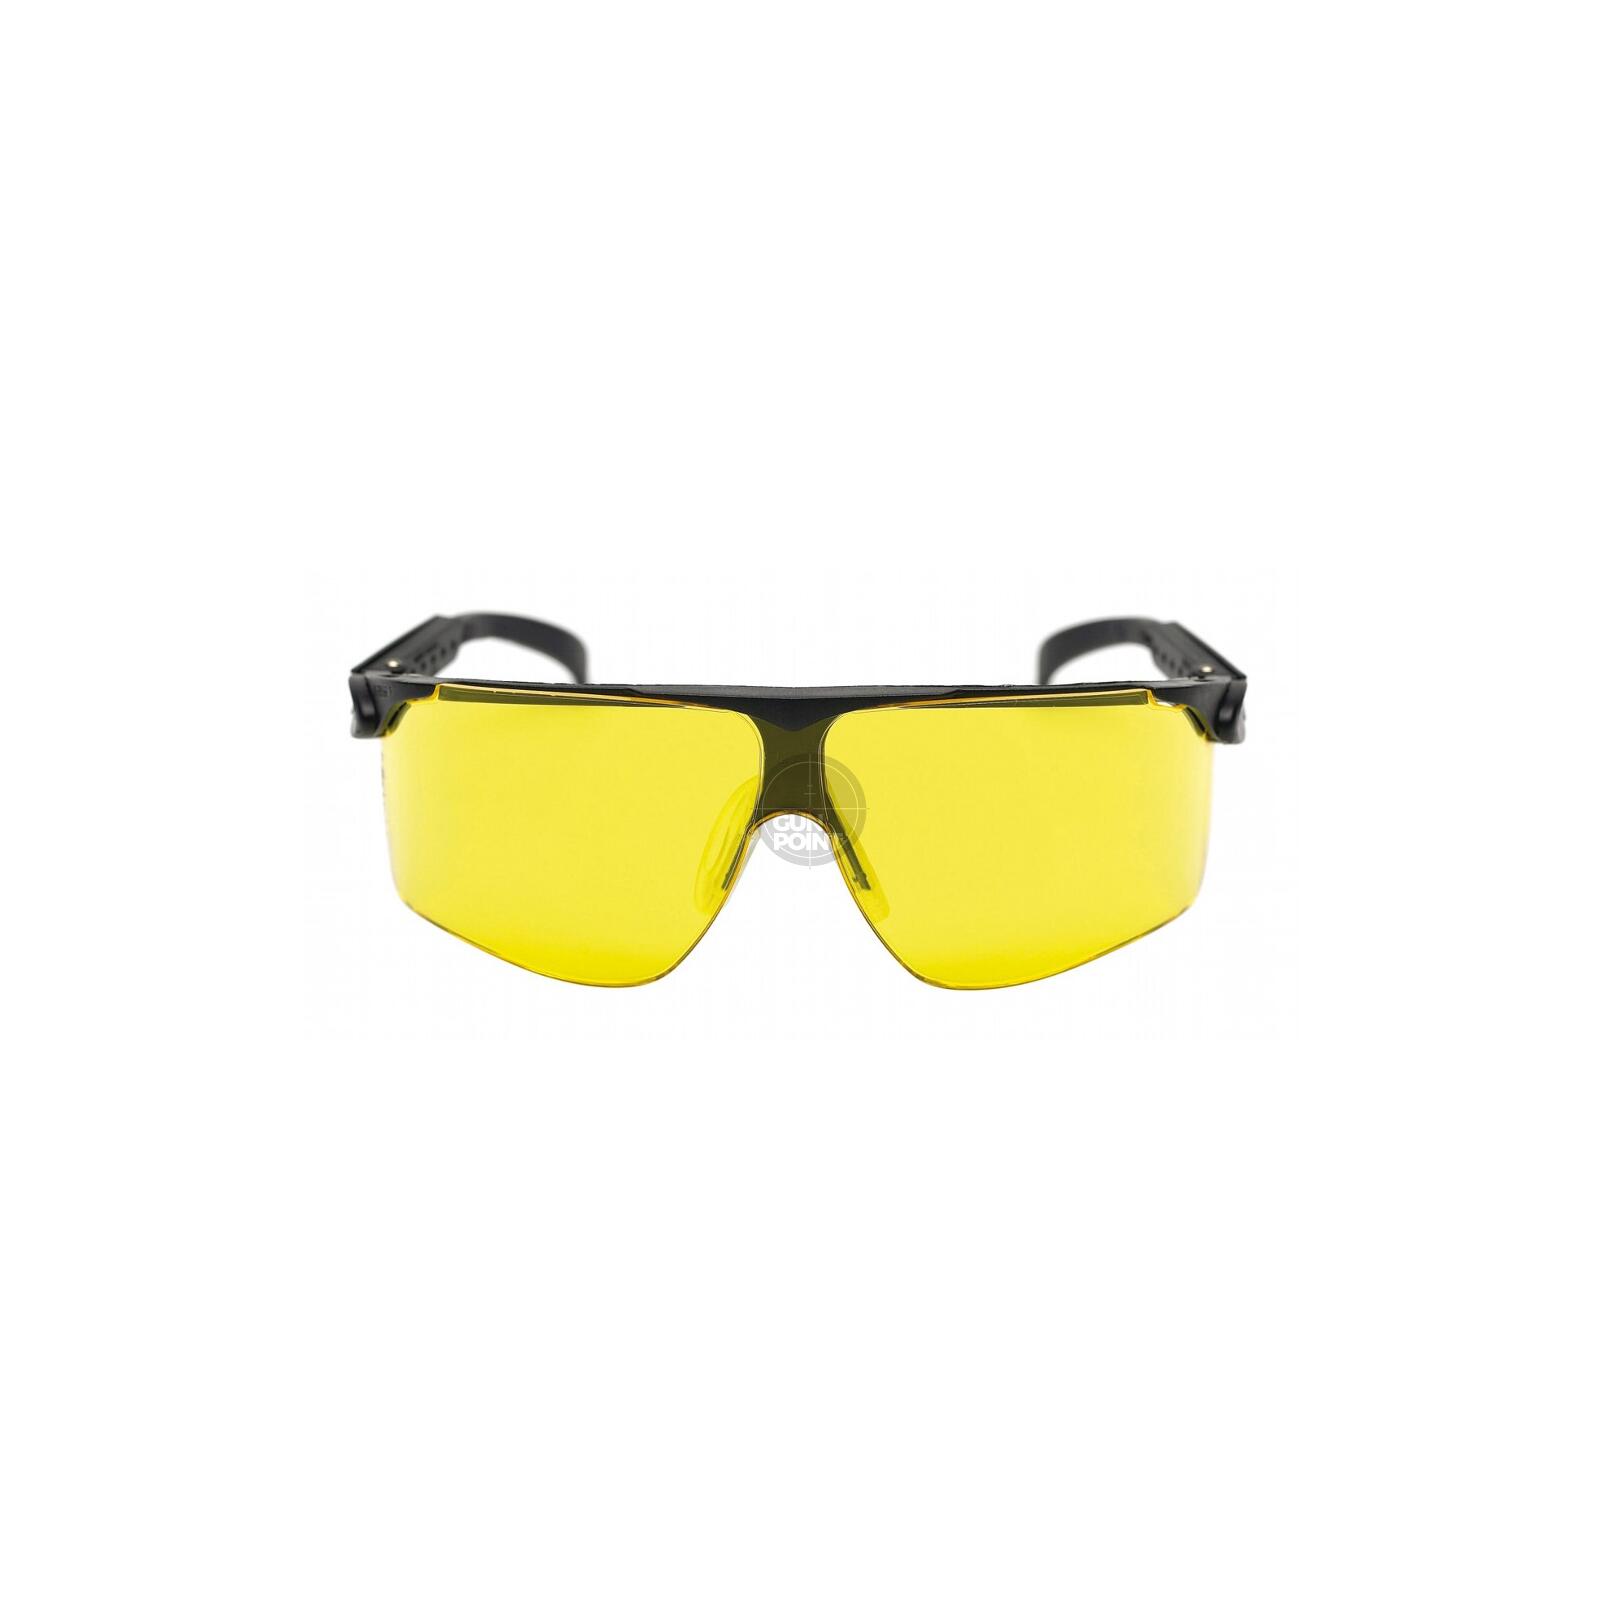 3M Klassisch Schießbrille IN Gelb Smoke oder Klar 